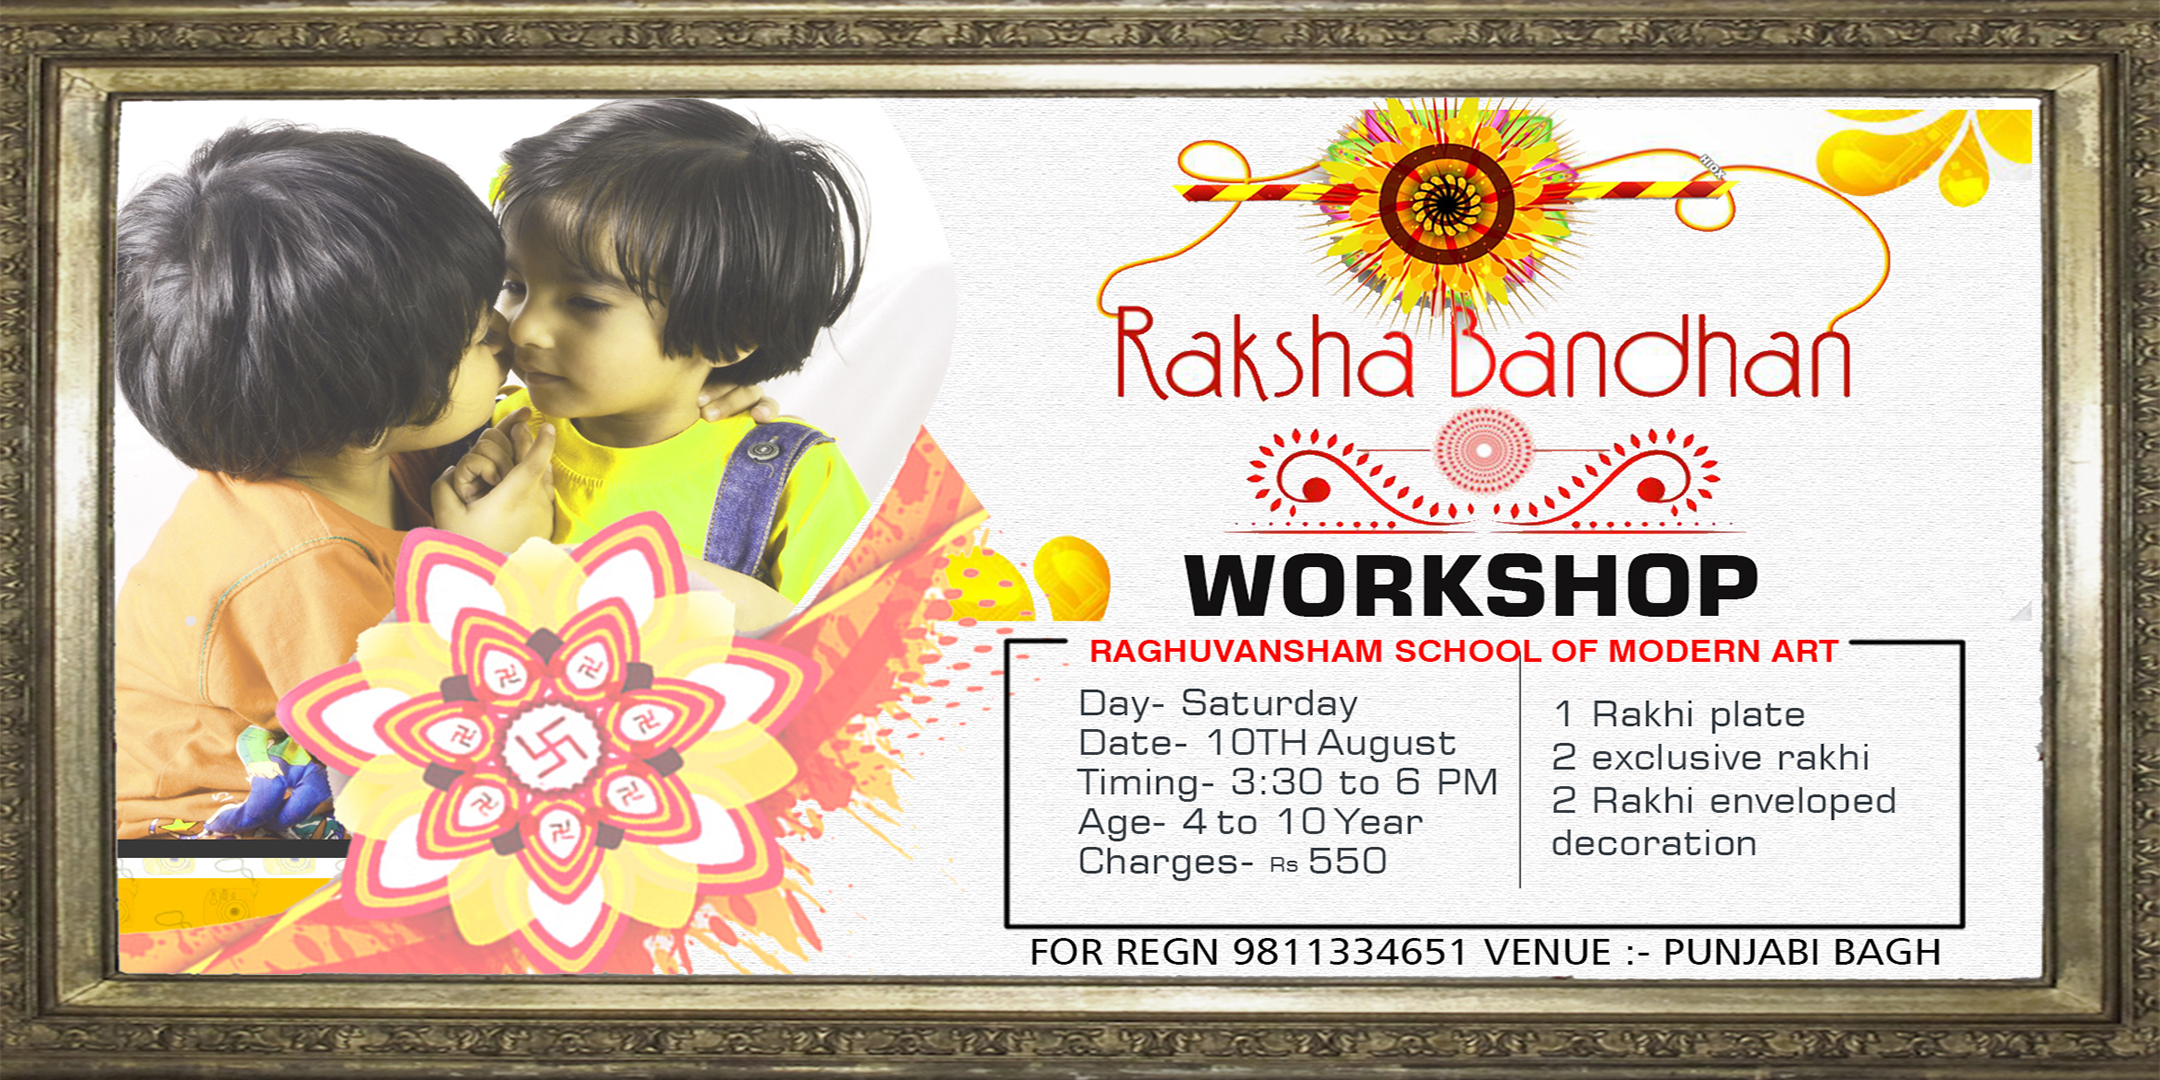 Raksha Bandhan Workshop, West Delhi, Delhi, India